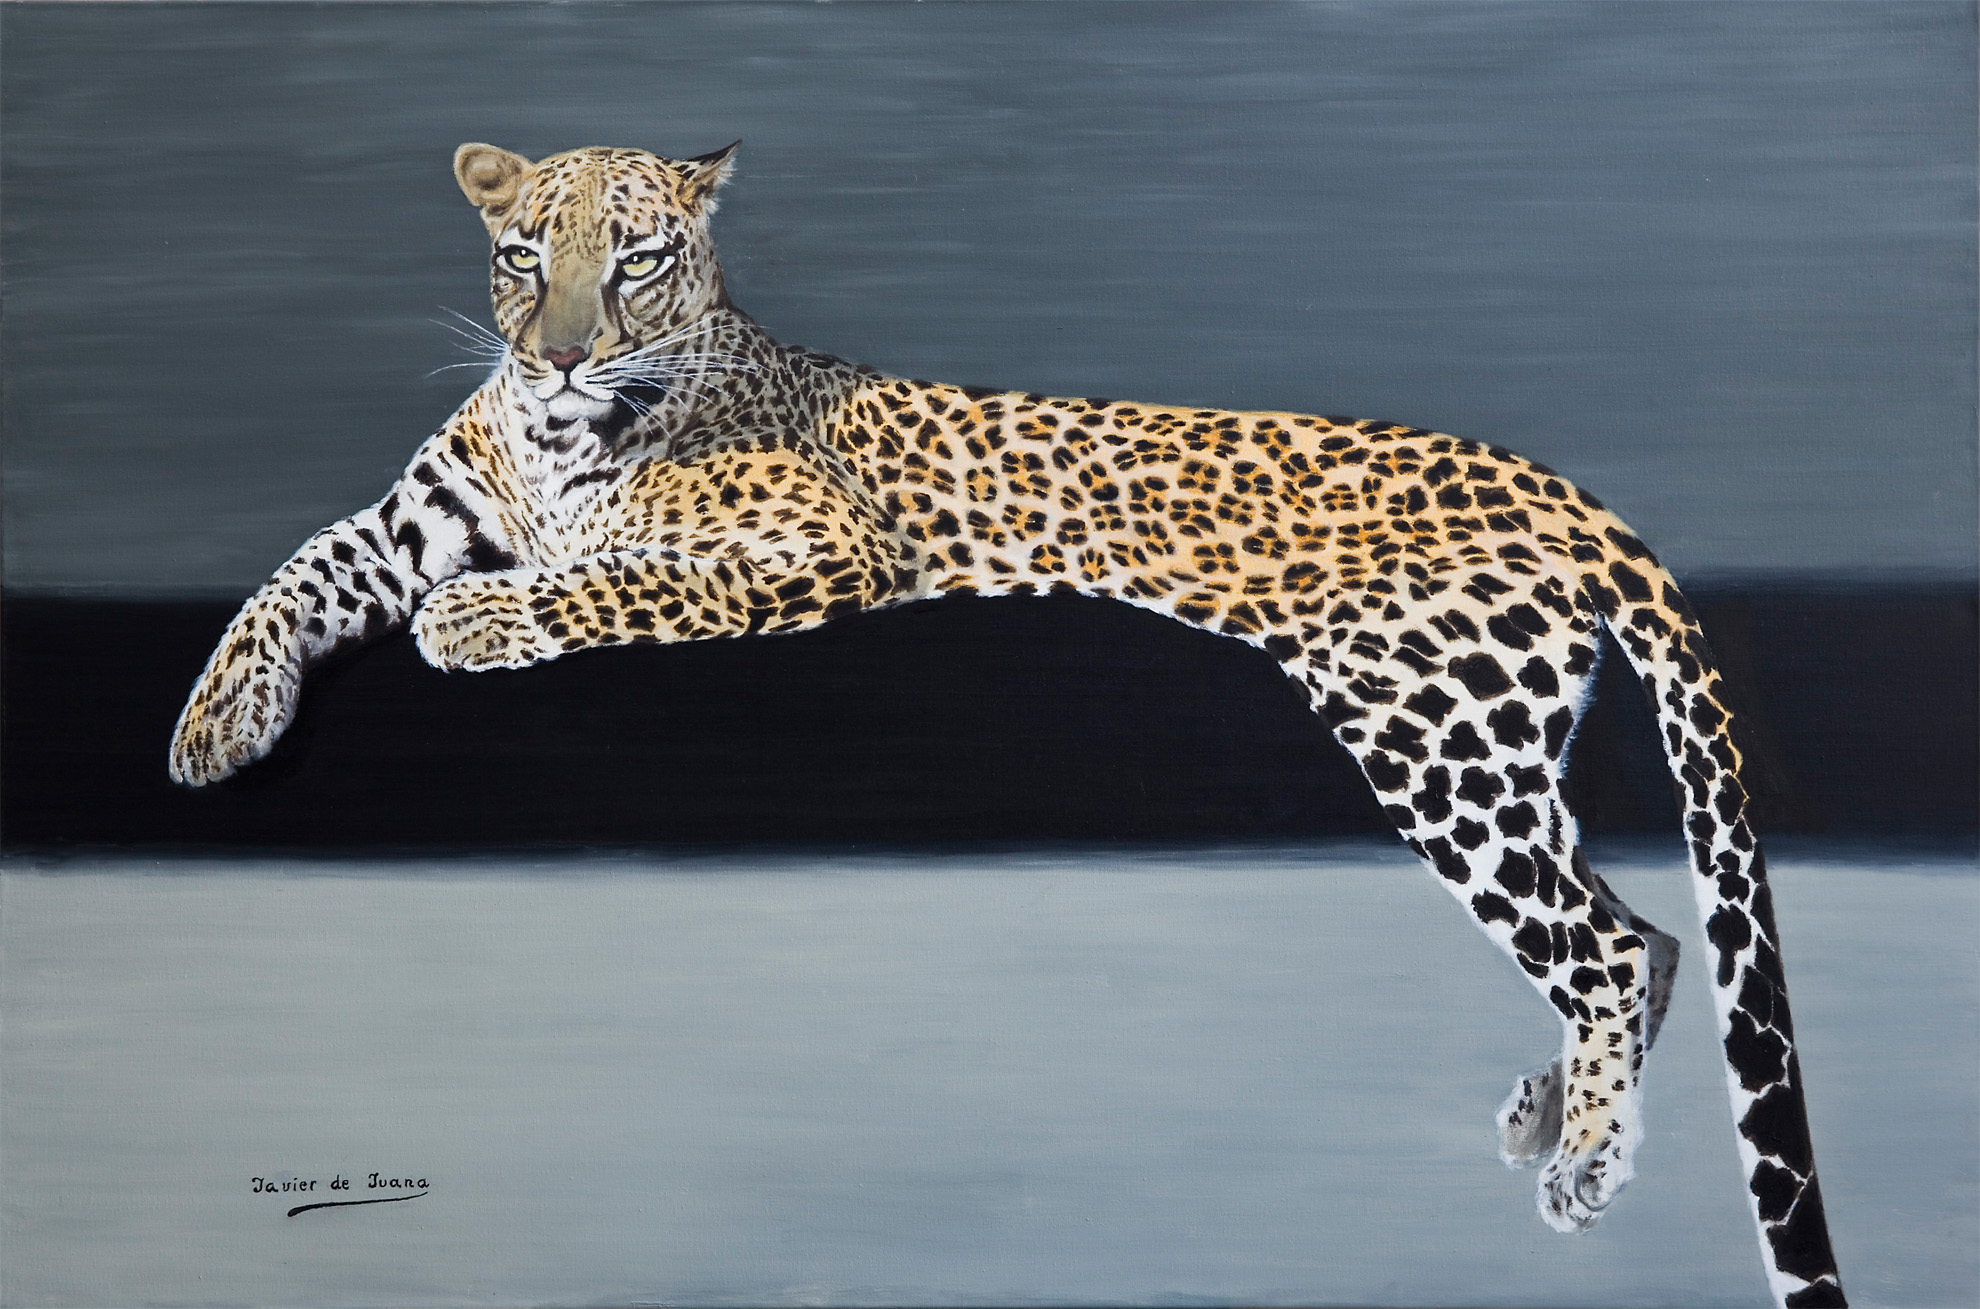 Leopardo - Cuadro de Javier de Juana